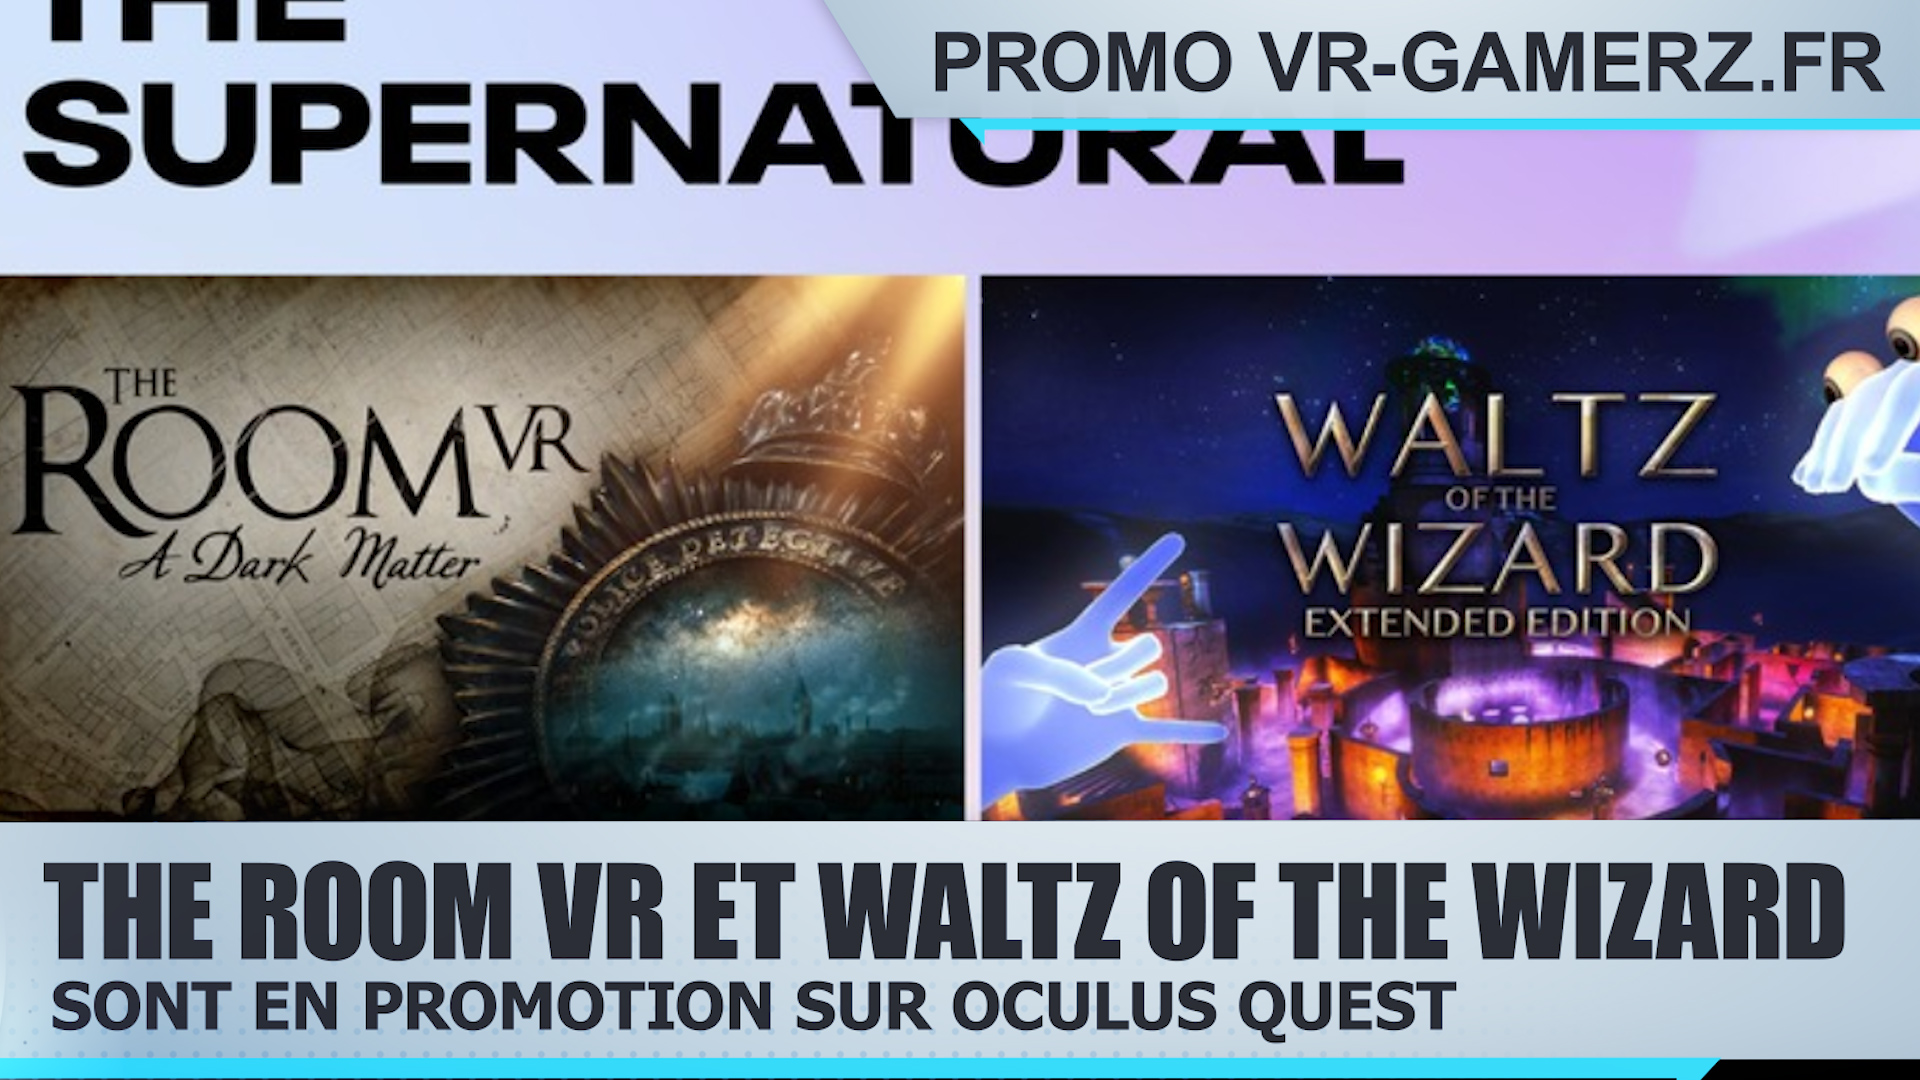 The Room VR et Waltz of The Wizard sont en promotion sur Oculus quest